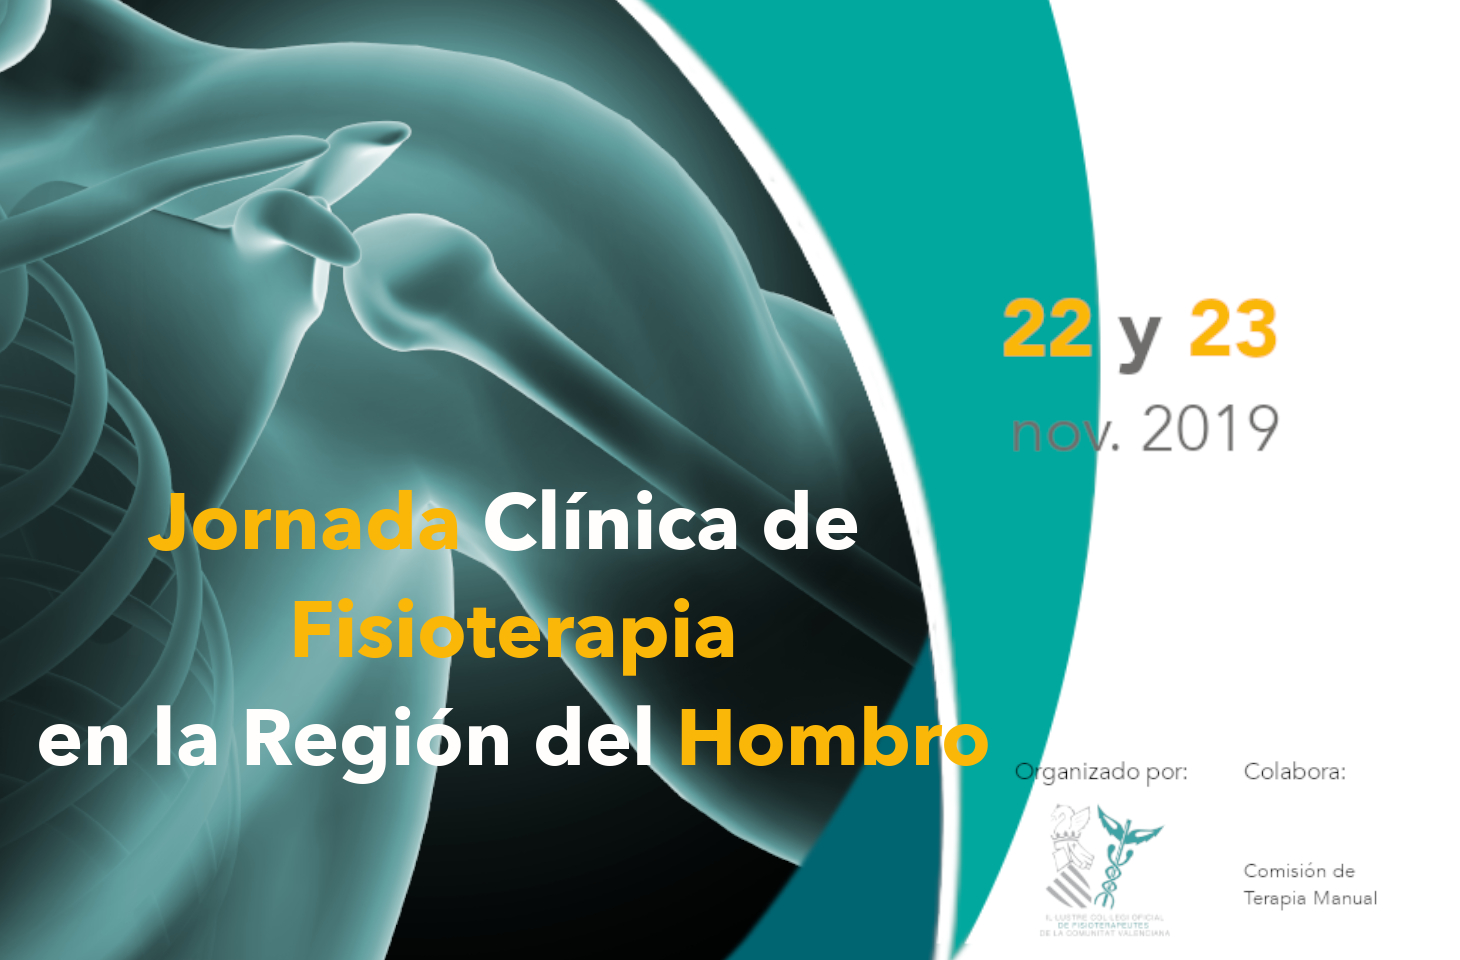 El ICOFCV celebrará en noviembre la “Jornada clínica de Fisioterapia en la región del hombro”